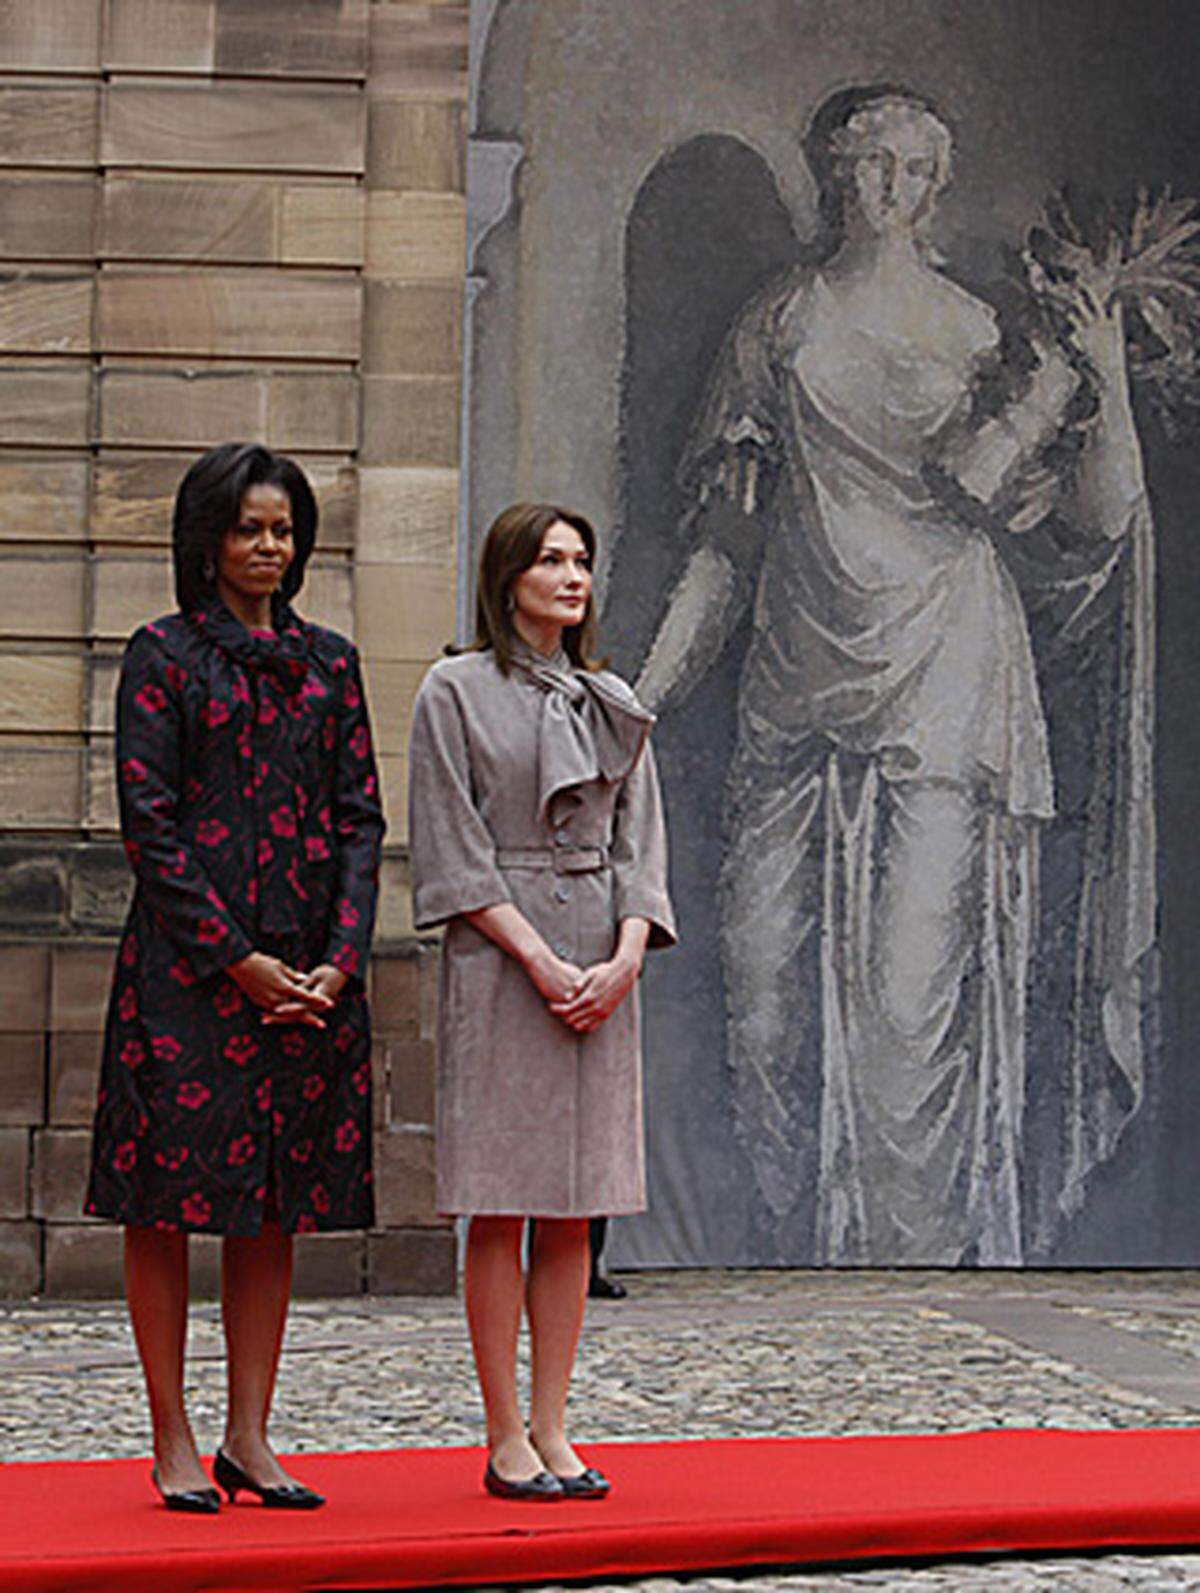 Seine Frau Michelle und Sarkozys Gattin Carla Bruni zogen sich zu einem gemeinsamen Mittagessen zurück. Beide First Ladys zeigten sich in Frühlingsmänteln. Während Michelle Obama ein schwarz-pinkfarbenes Ensemble gewählt hatte, trug Carla Bruni dezentes Hellgrau.